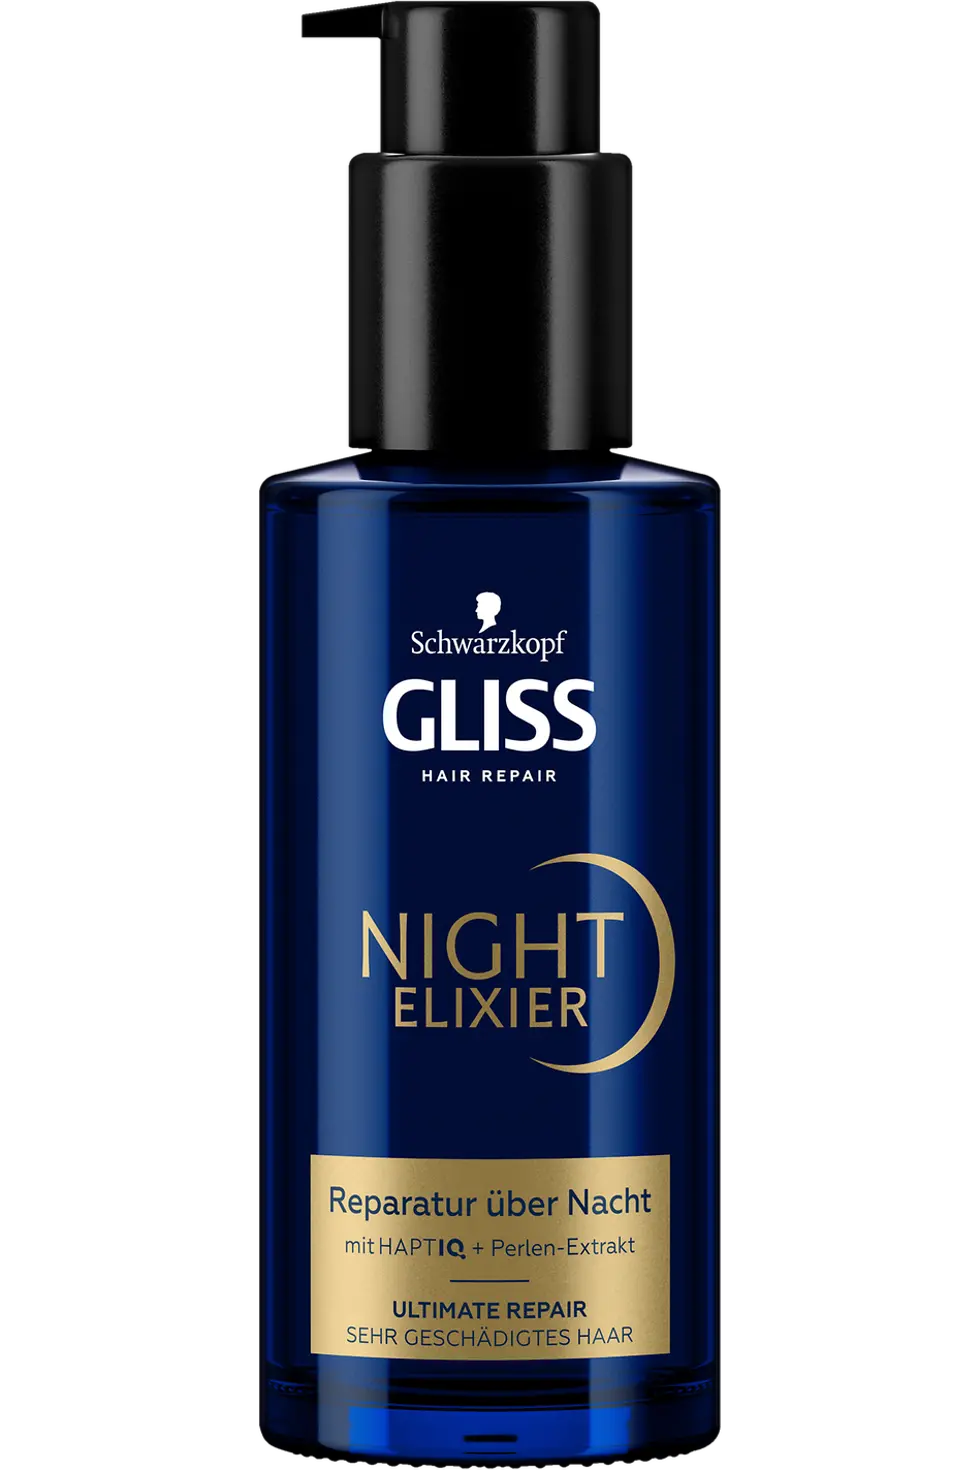 
Gliss Night Elixier Ultimate Repair Reparatur über Nacht